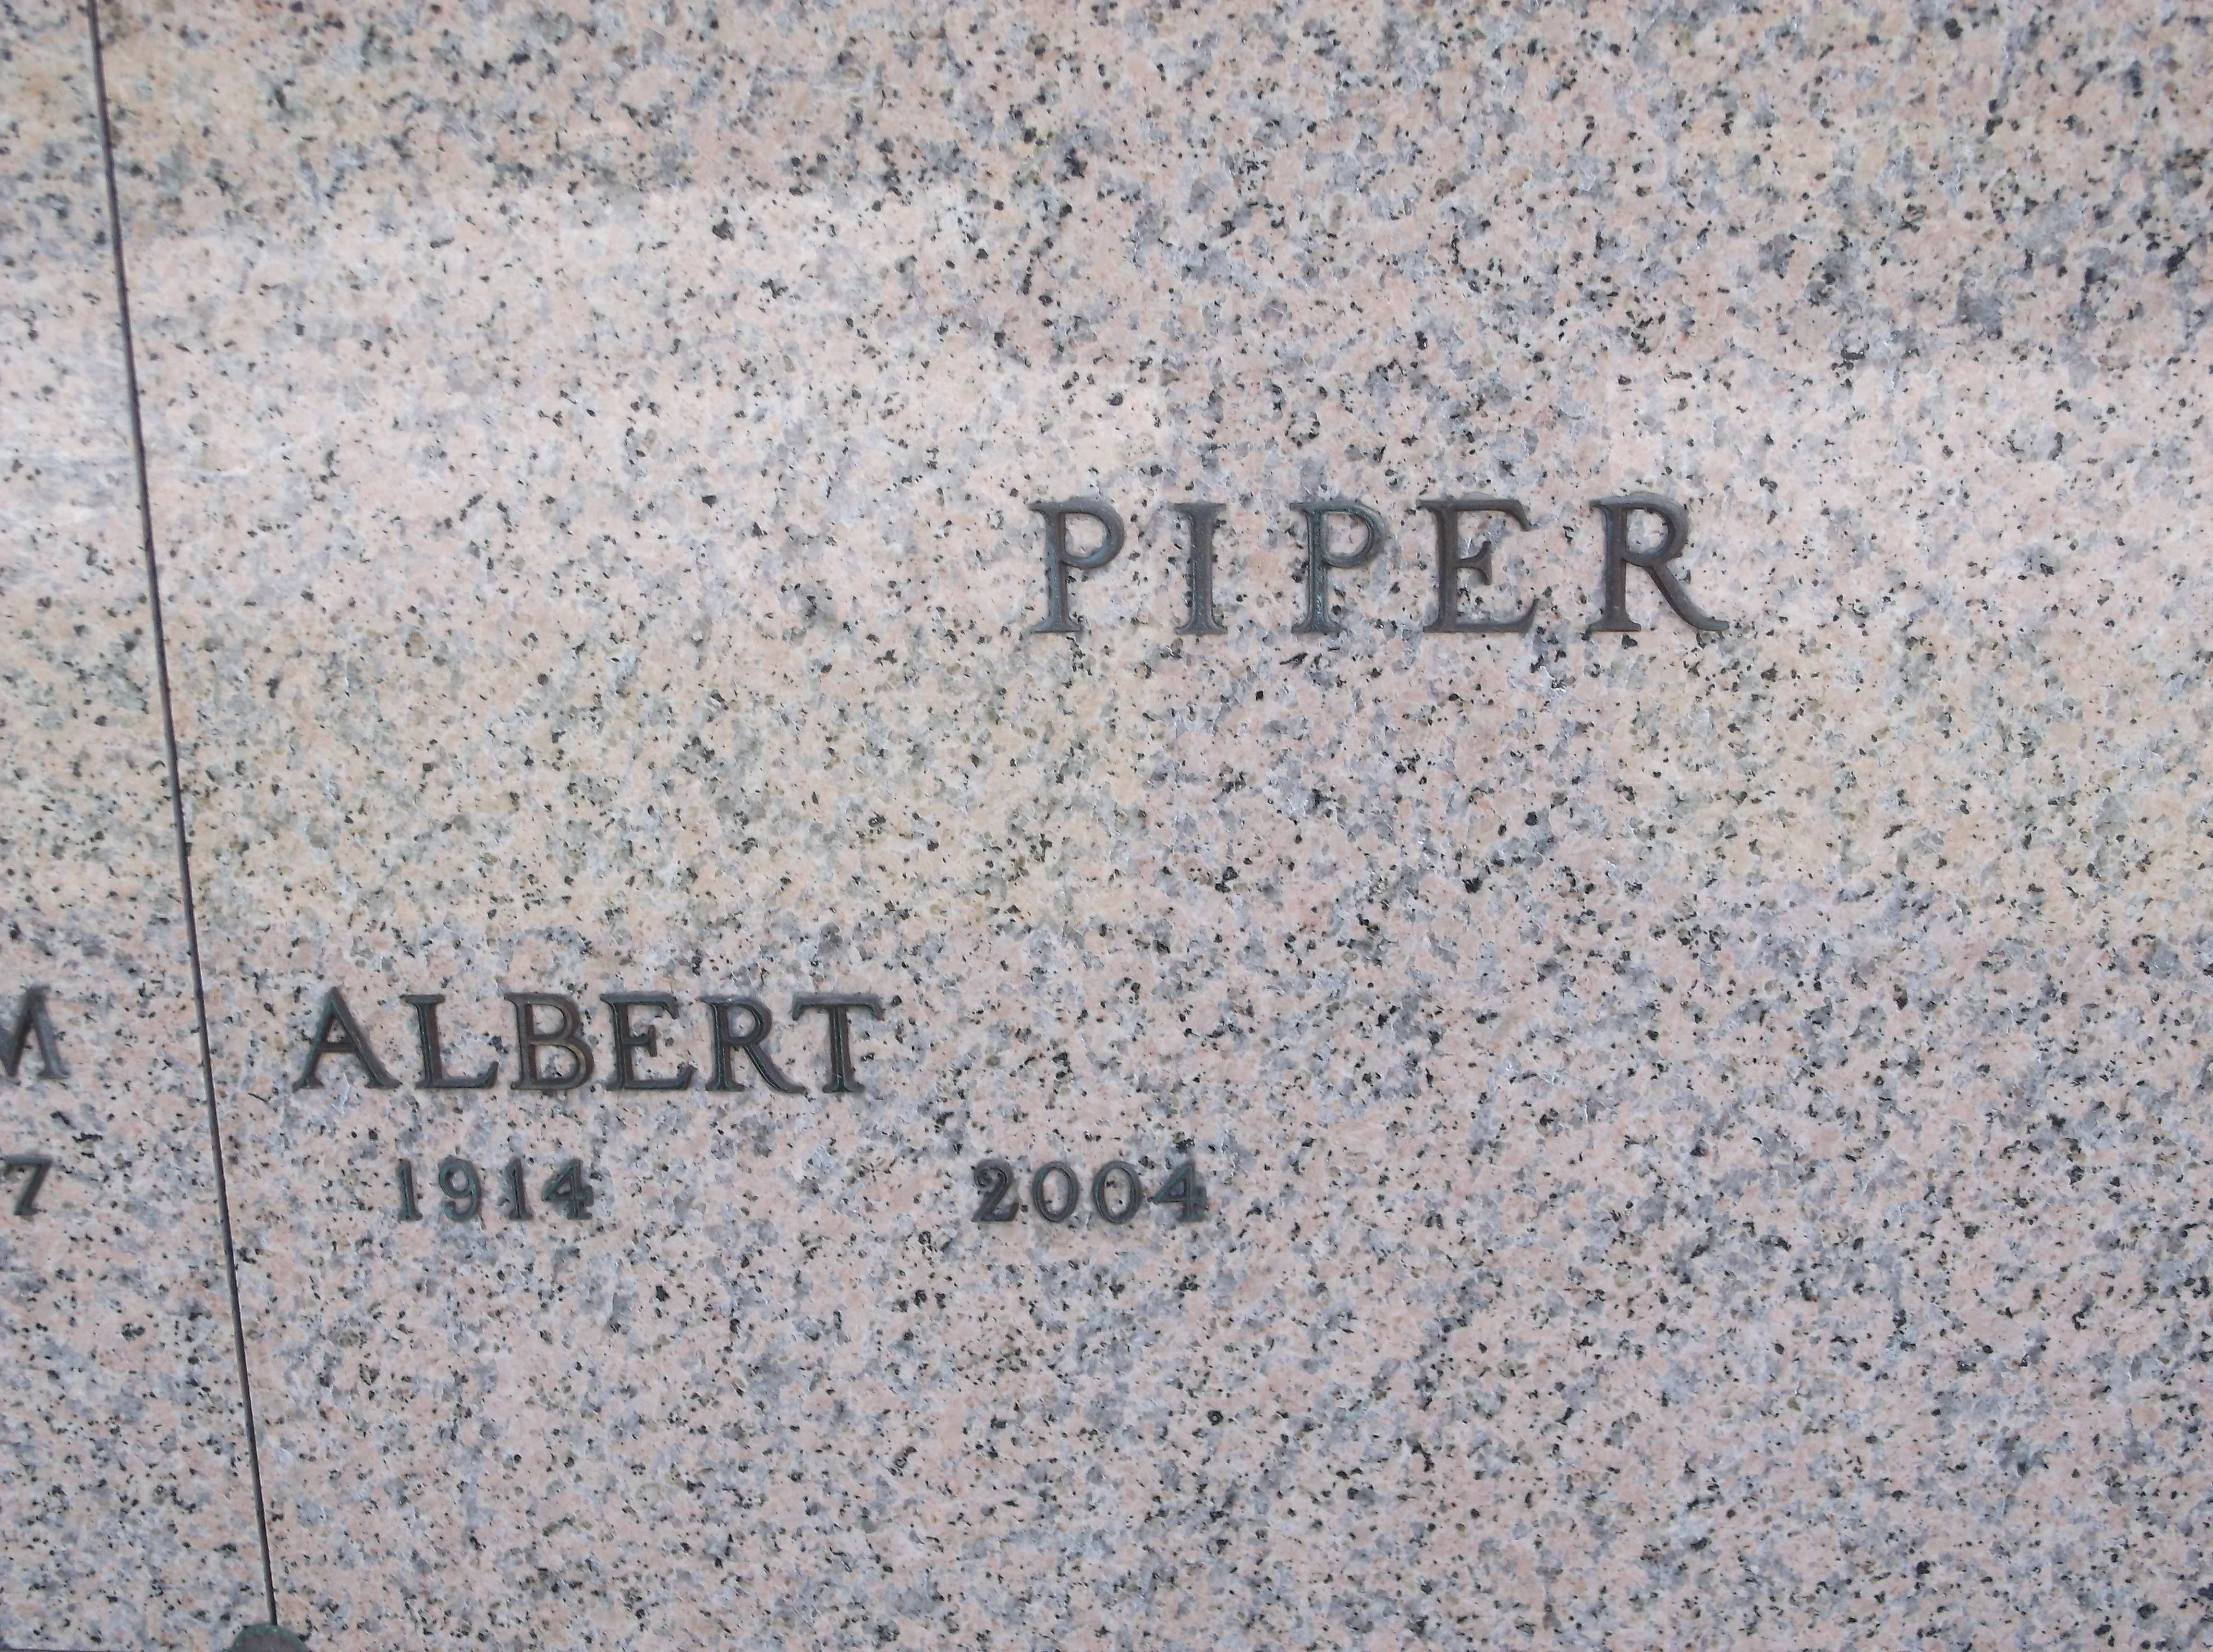 Albert Piper